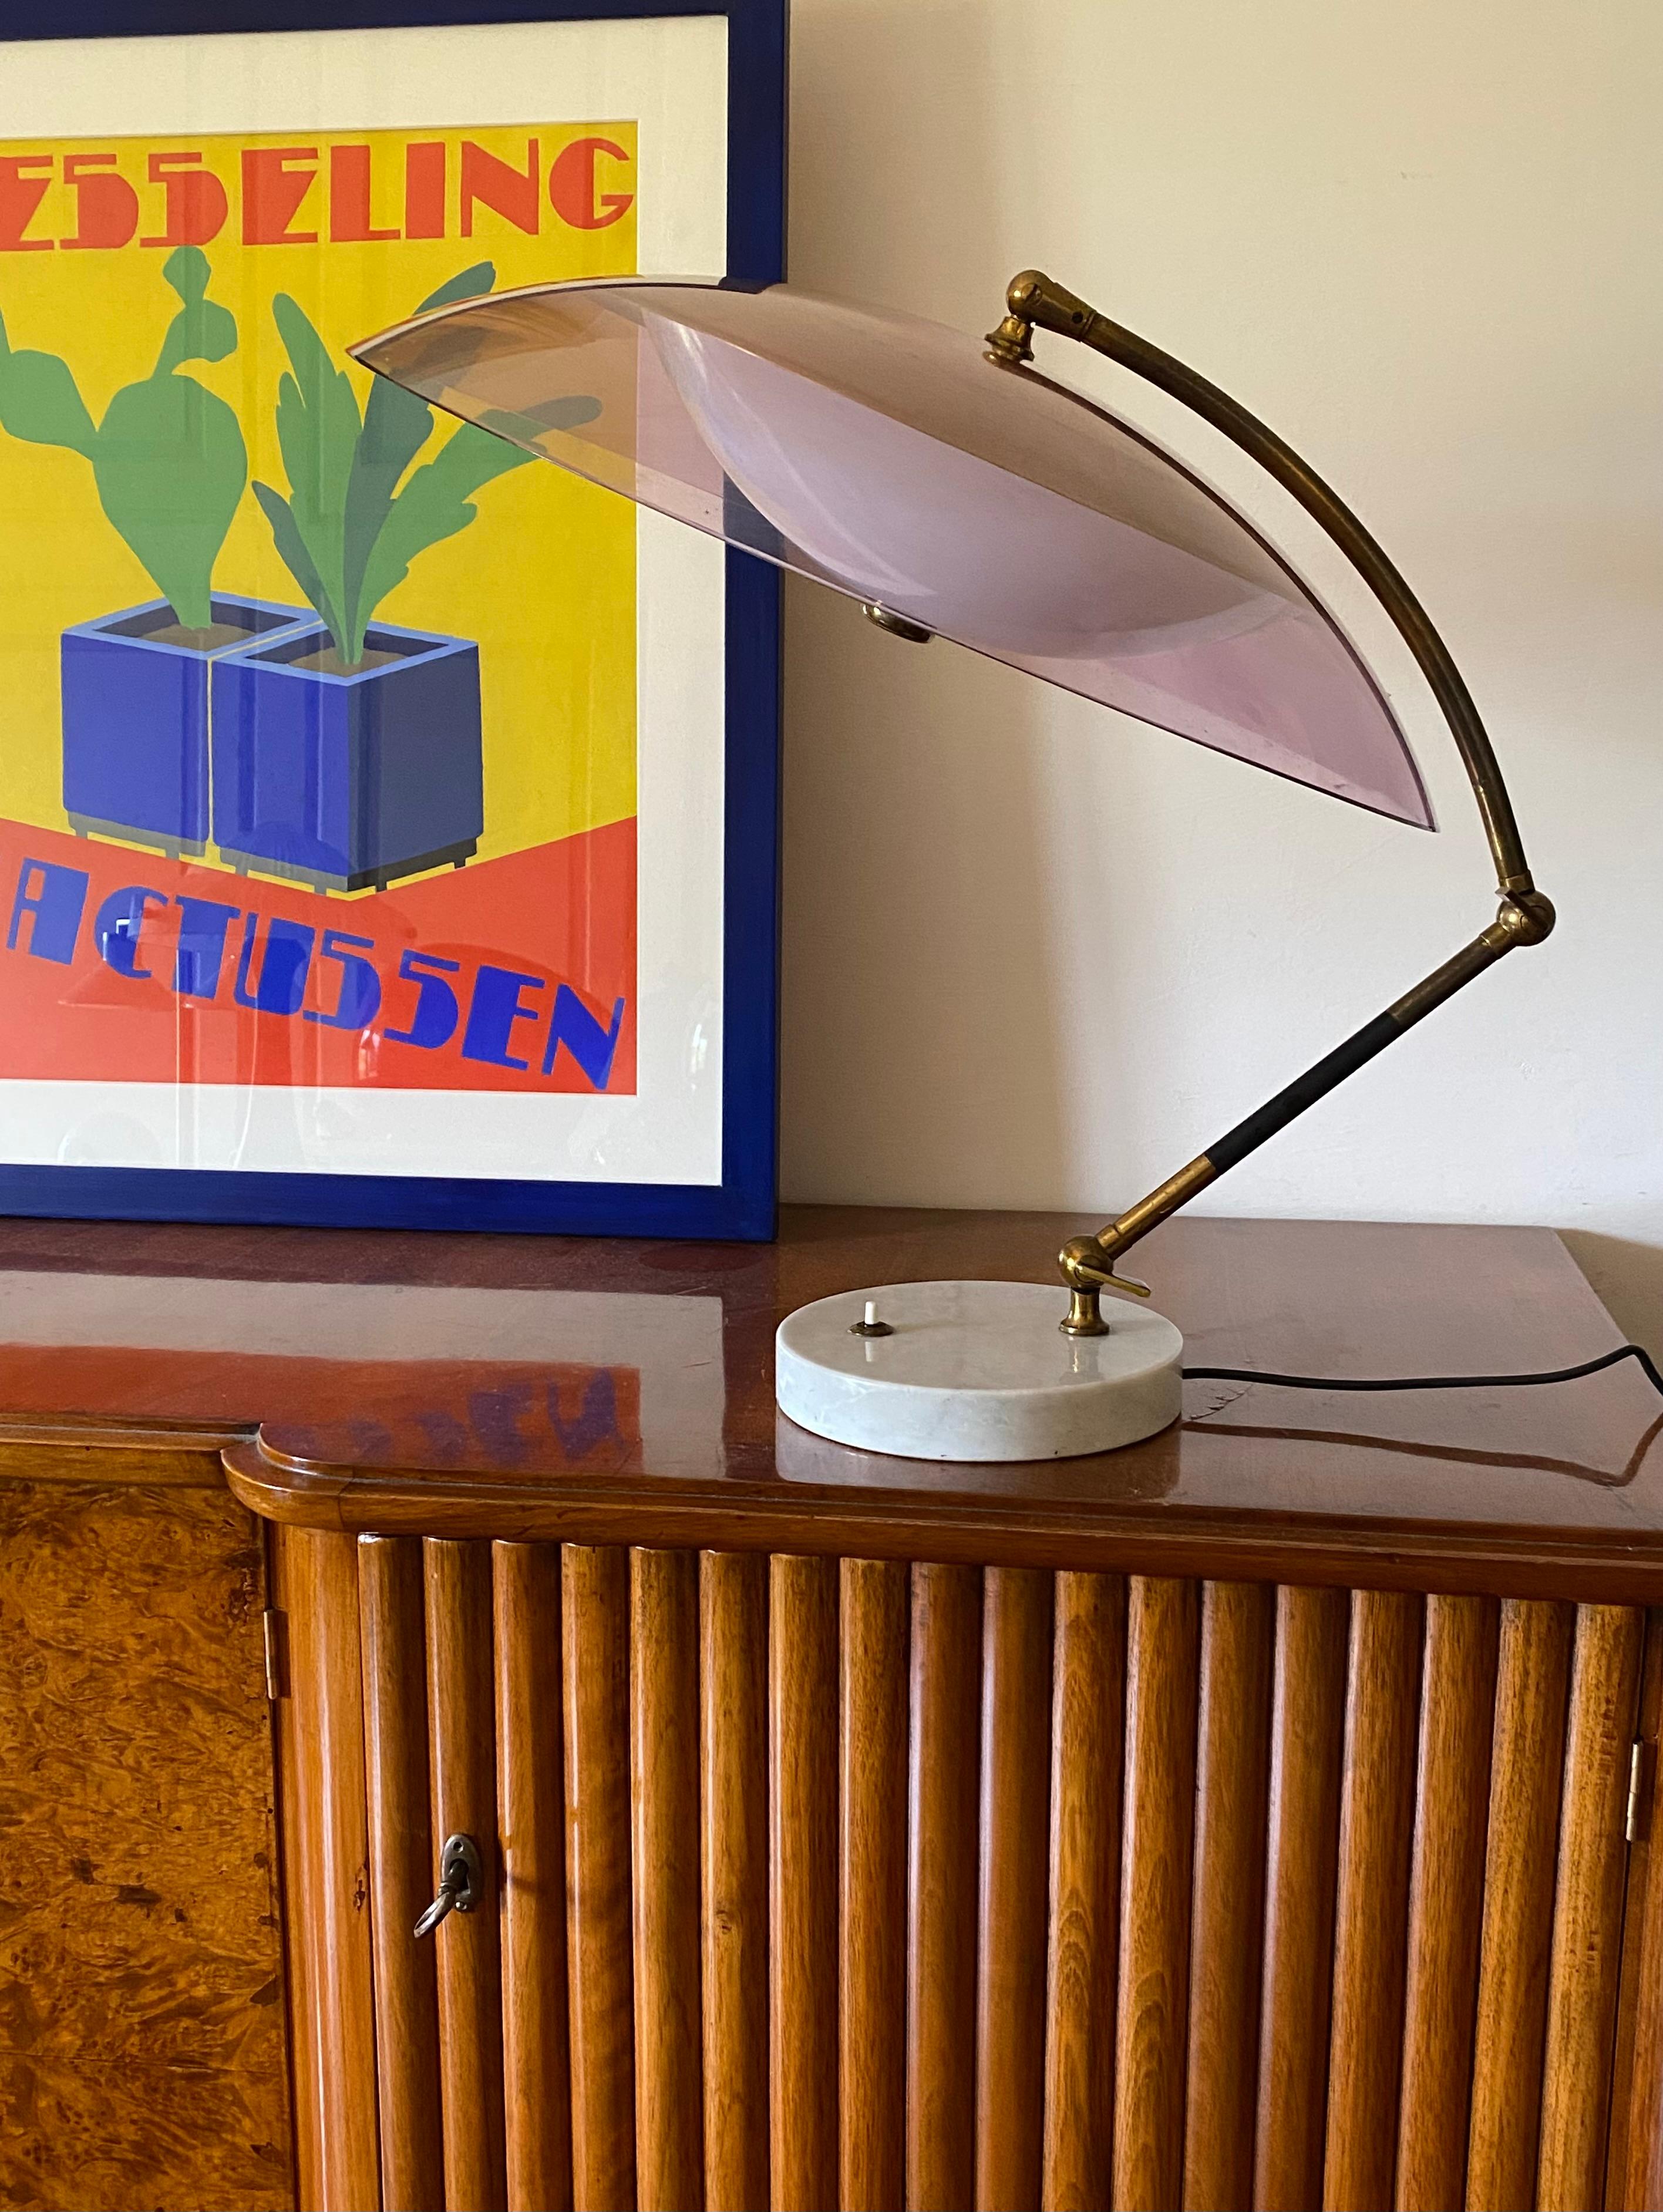 Mod. Lampe de table dôme Orléans, abat-jour en perspex violet légèrement fumé.

Stilux, Milan Italie, 1955

Marbre de Carrare, laiton, acrylique

bras articulé avec deux articulations réglables.

56 × 51 × 61 cm

Ref : Stilux Milan Production